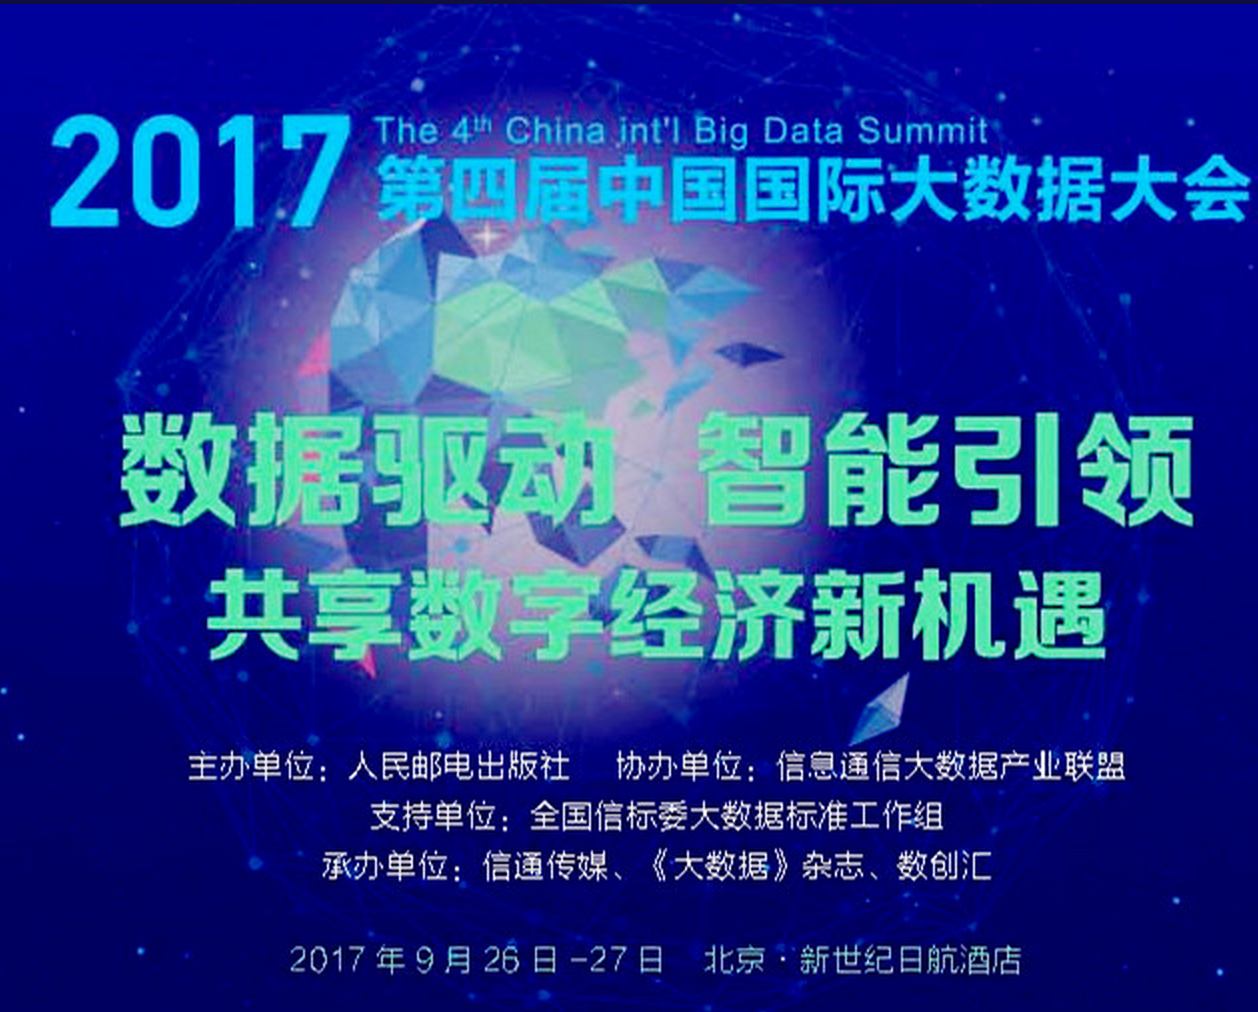 迎接数字经济新时代 第四届中国国际大数据大会务实推进应用落地